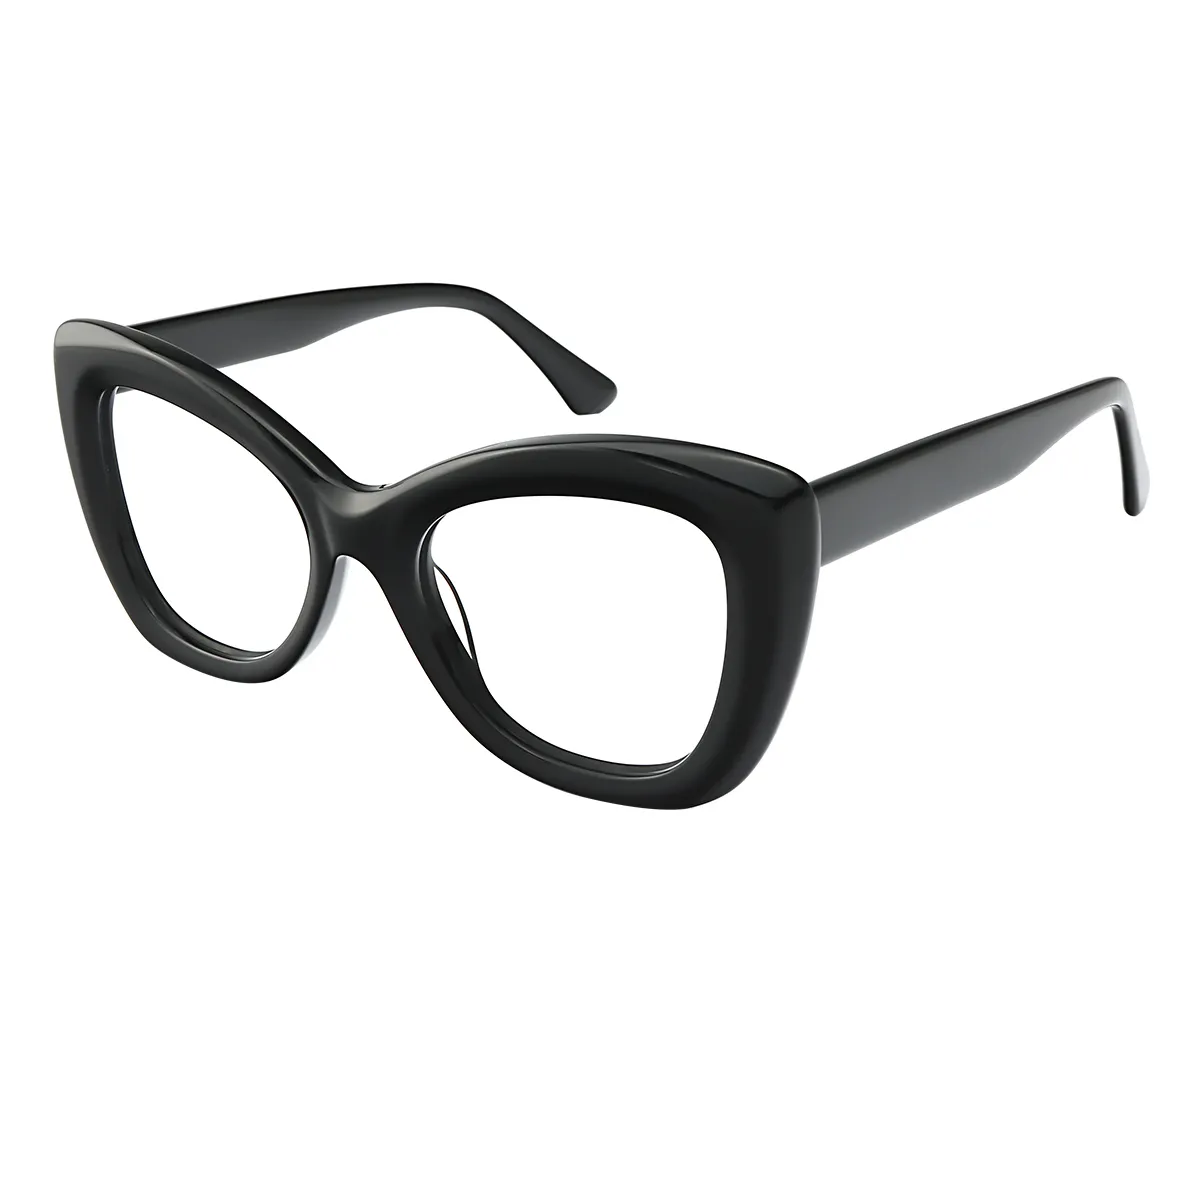 Mode - Cat-eye Black Glasses for Women